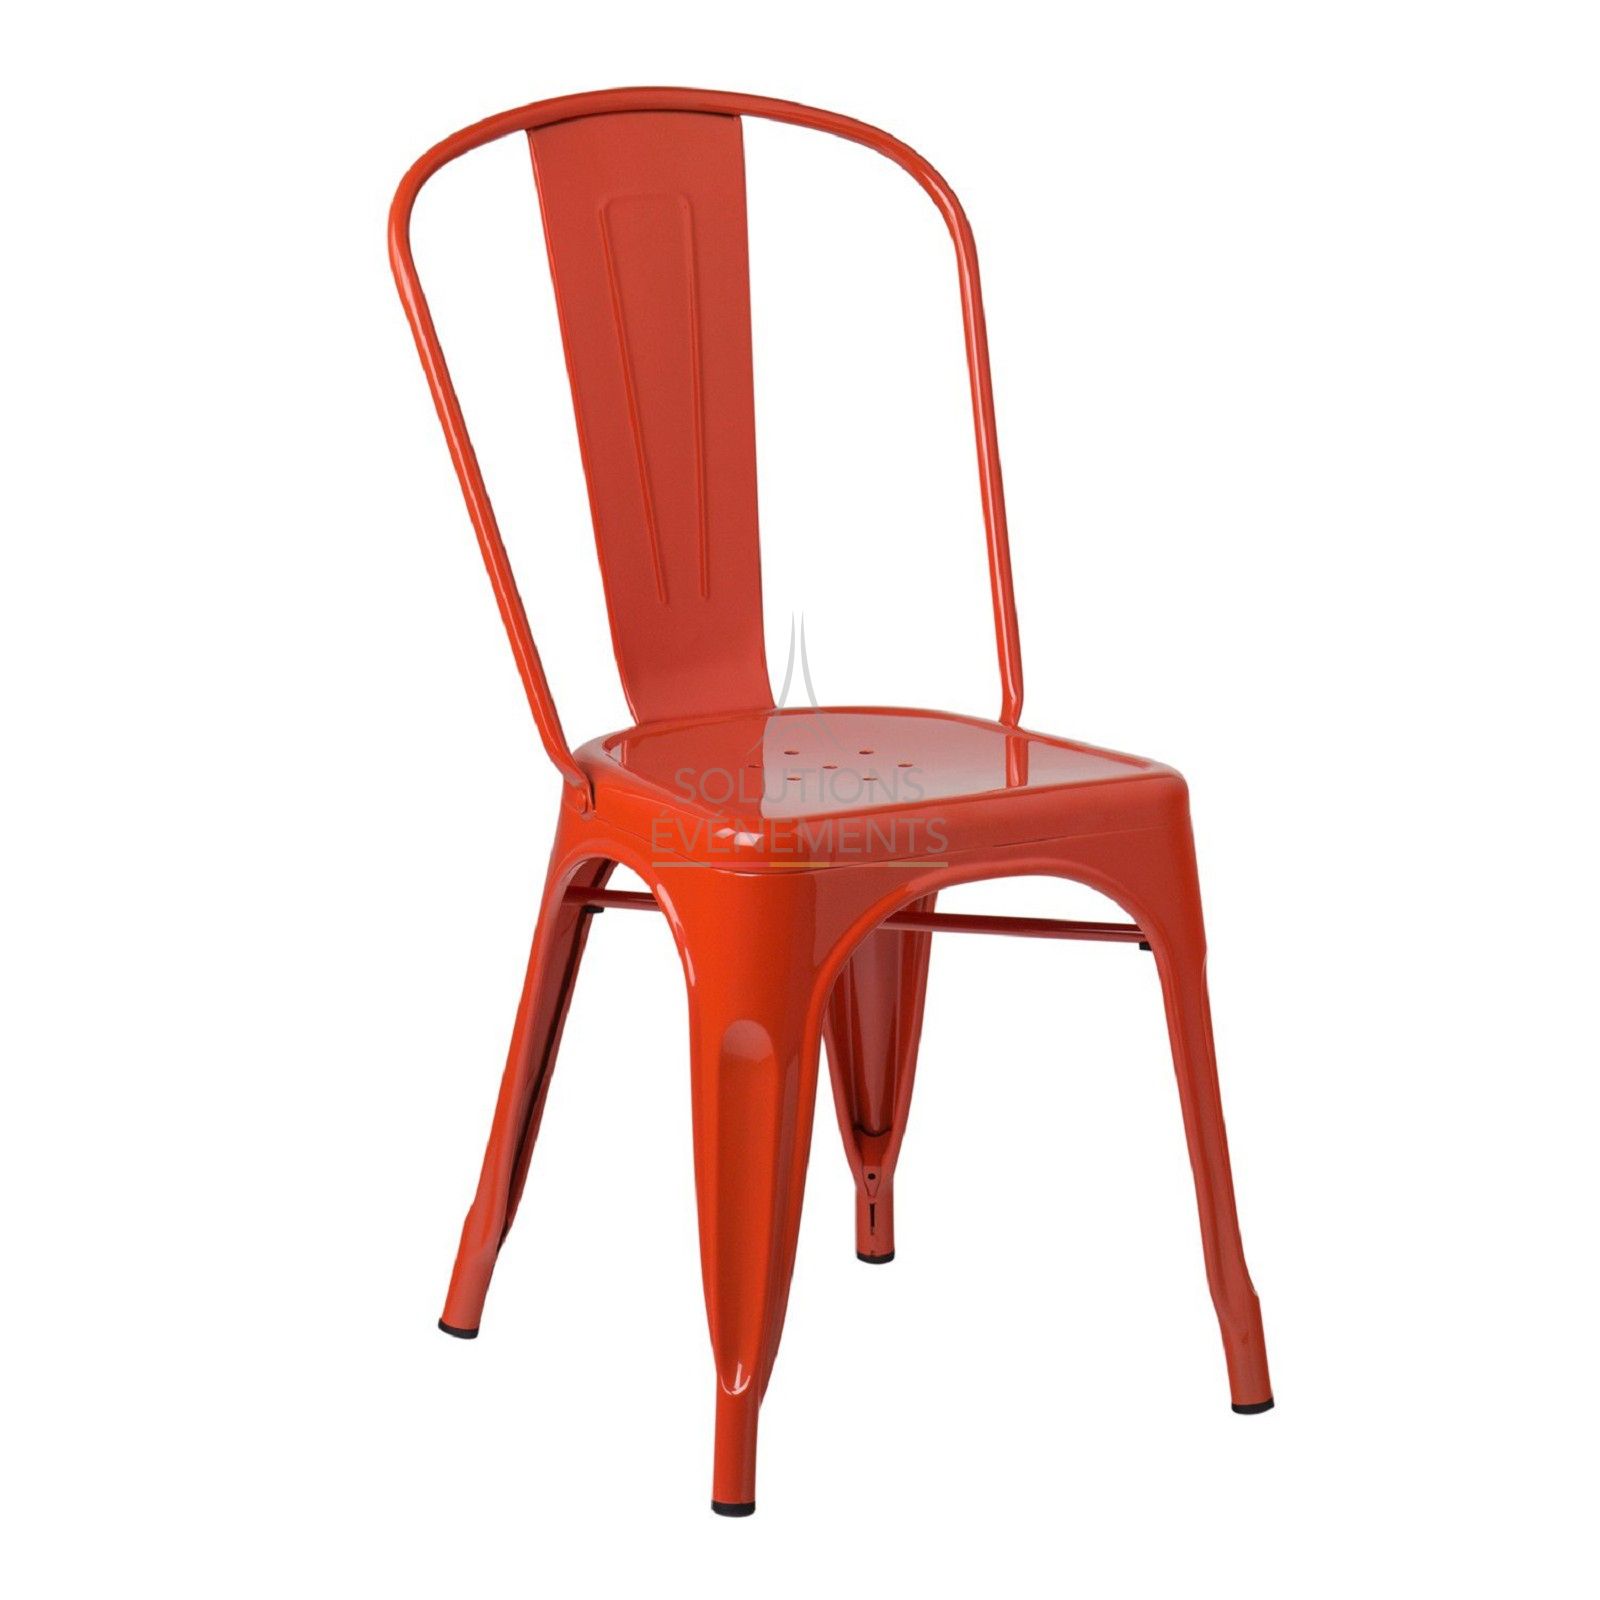 Location de chaise industrielle en metal de couleur orange